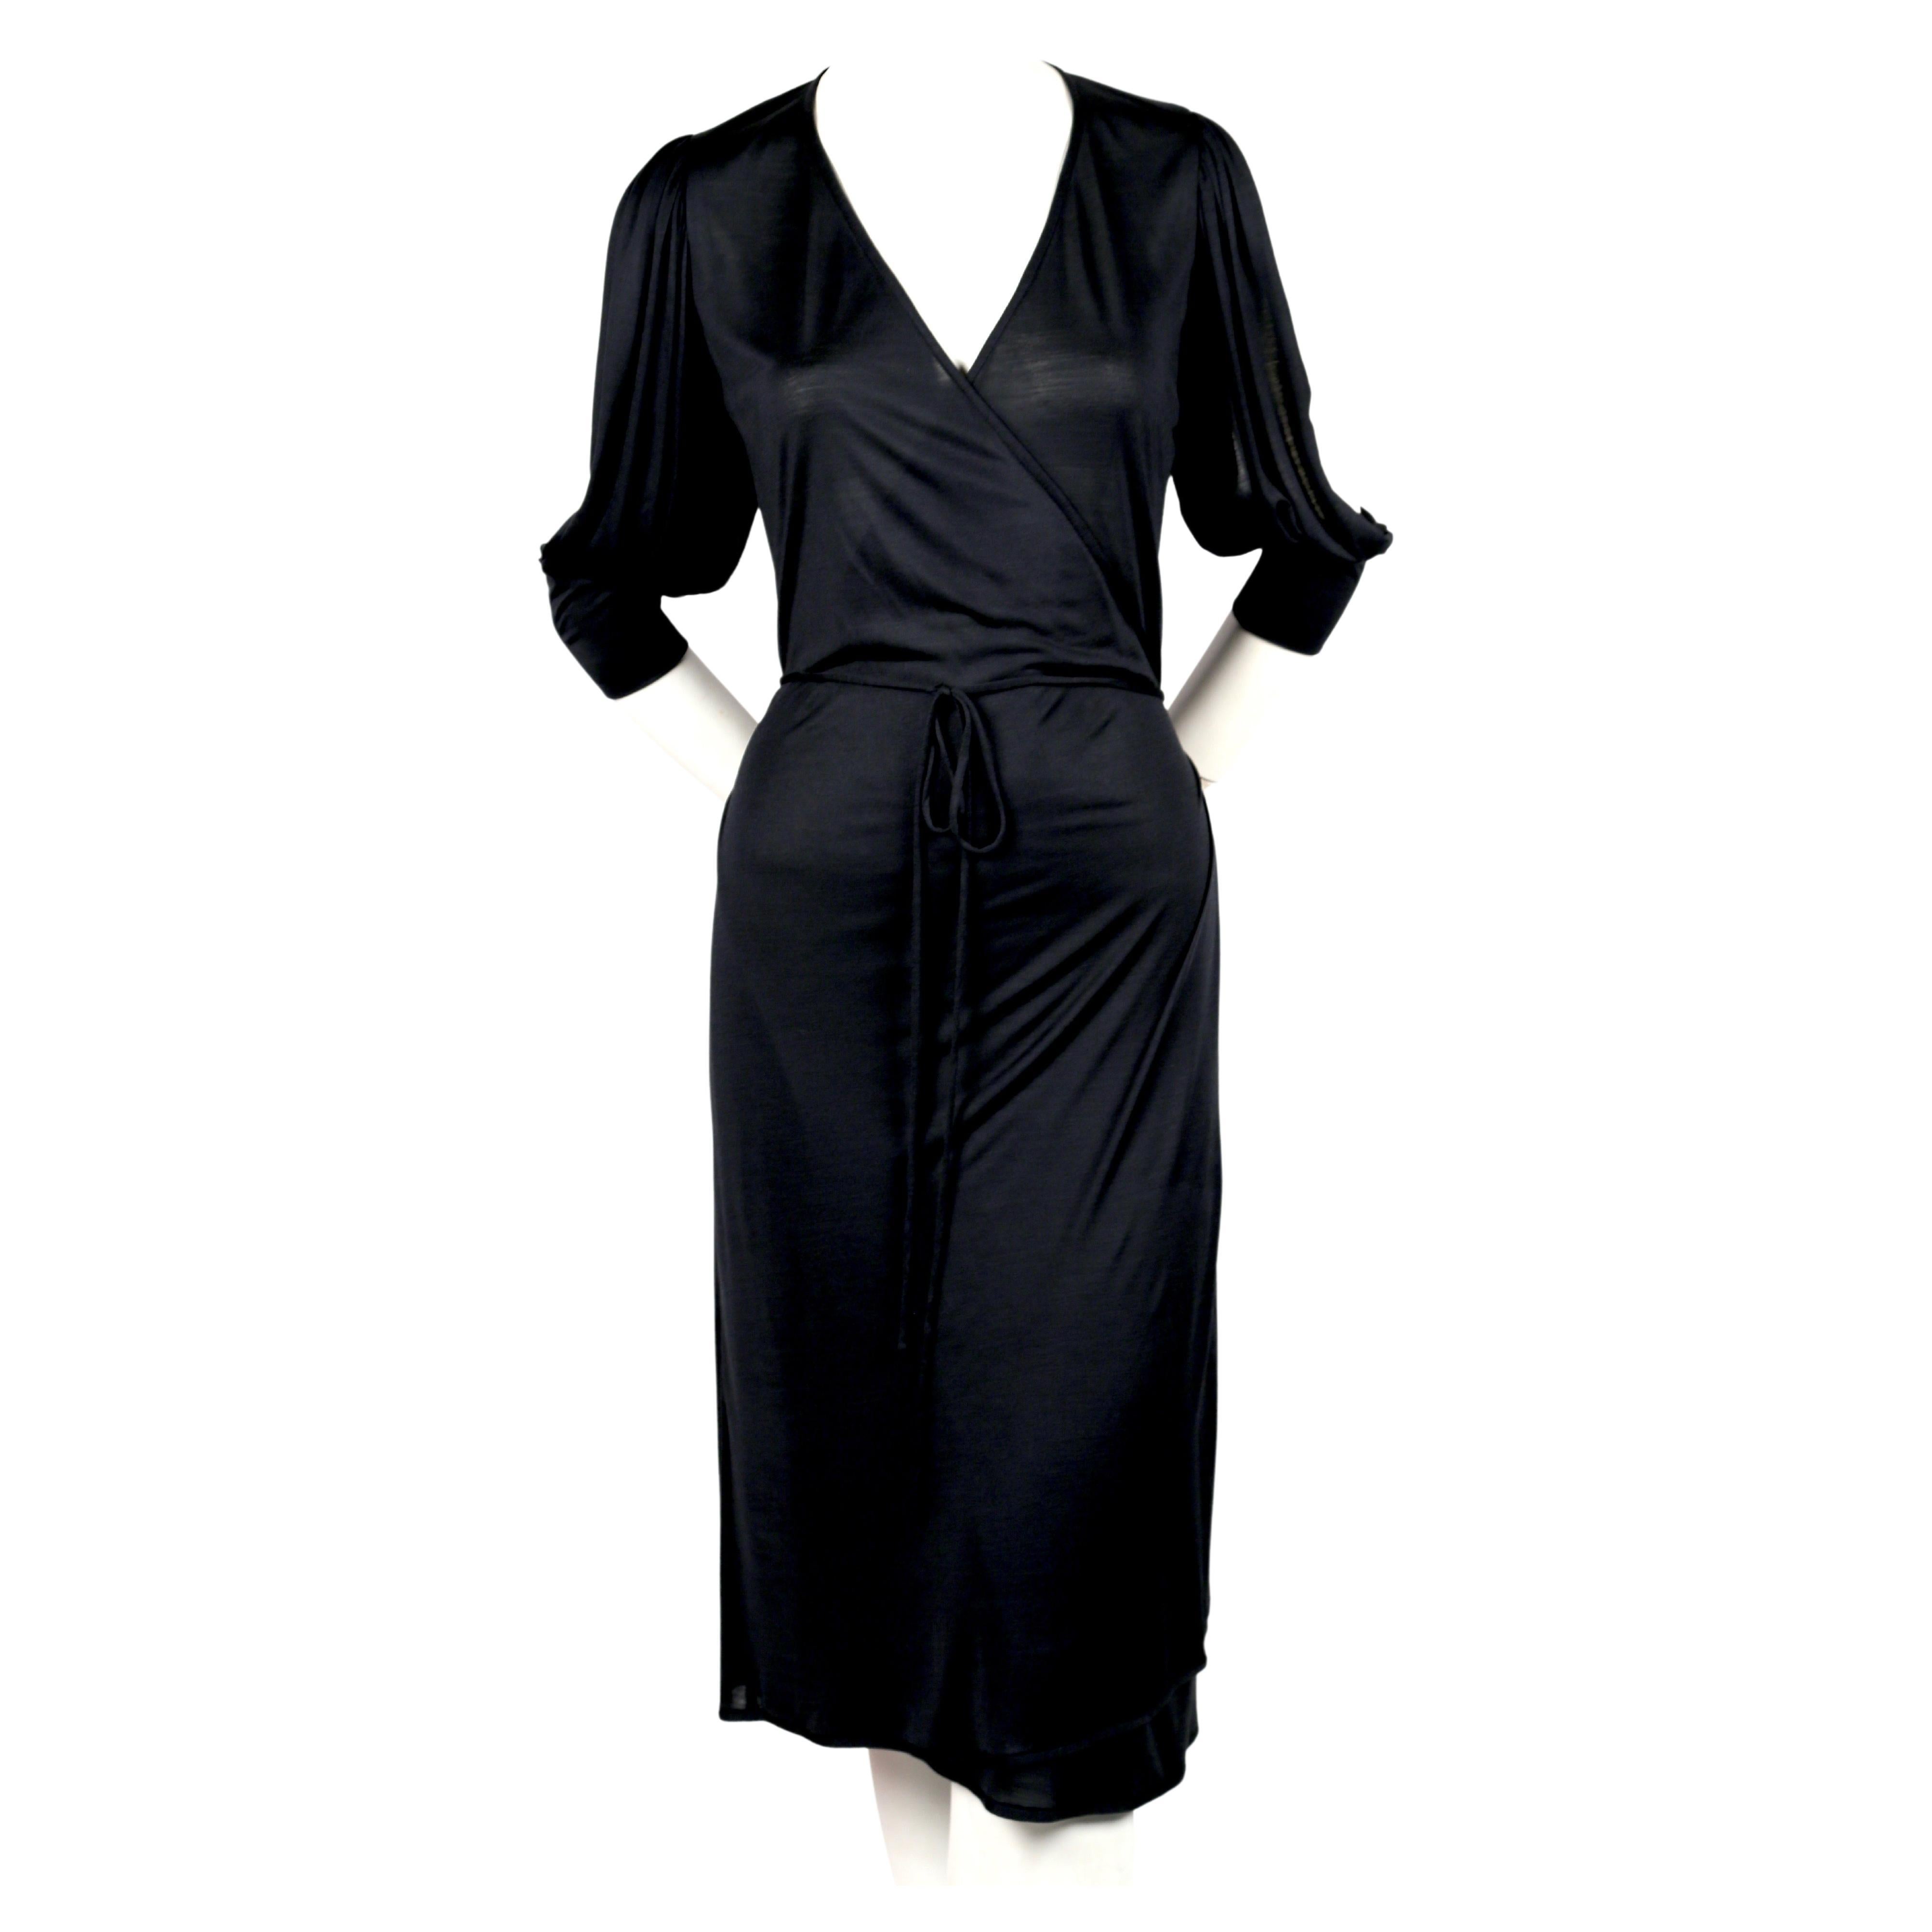 Blau-schwarzes Wickelkleid aus Jersey, entworfen von Nicolas Ghesquiere für Balenciaga im Frühjahr 2000. Französische Größe 36. Brust, Taille und Hüfte sind durch den Wickelverschluss verstellbar, am besten passt es jedoch einer französischen Größe